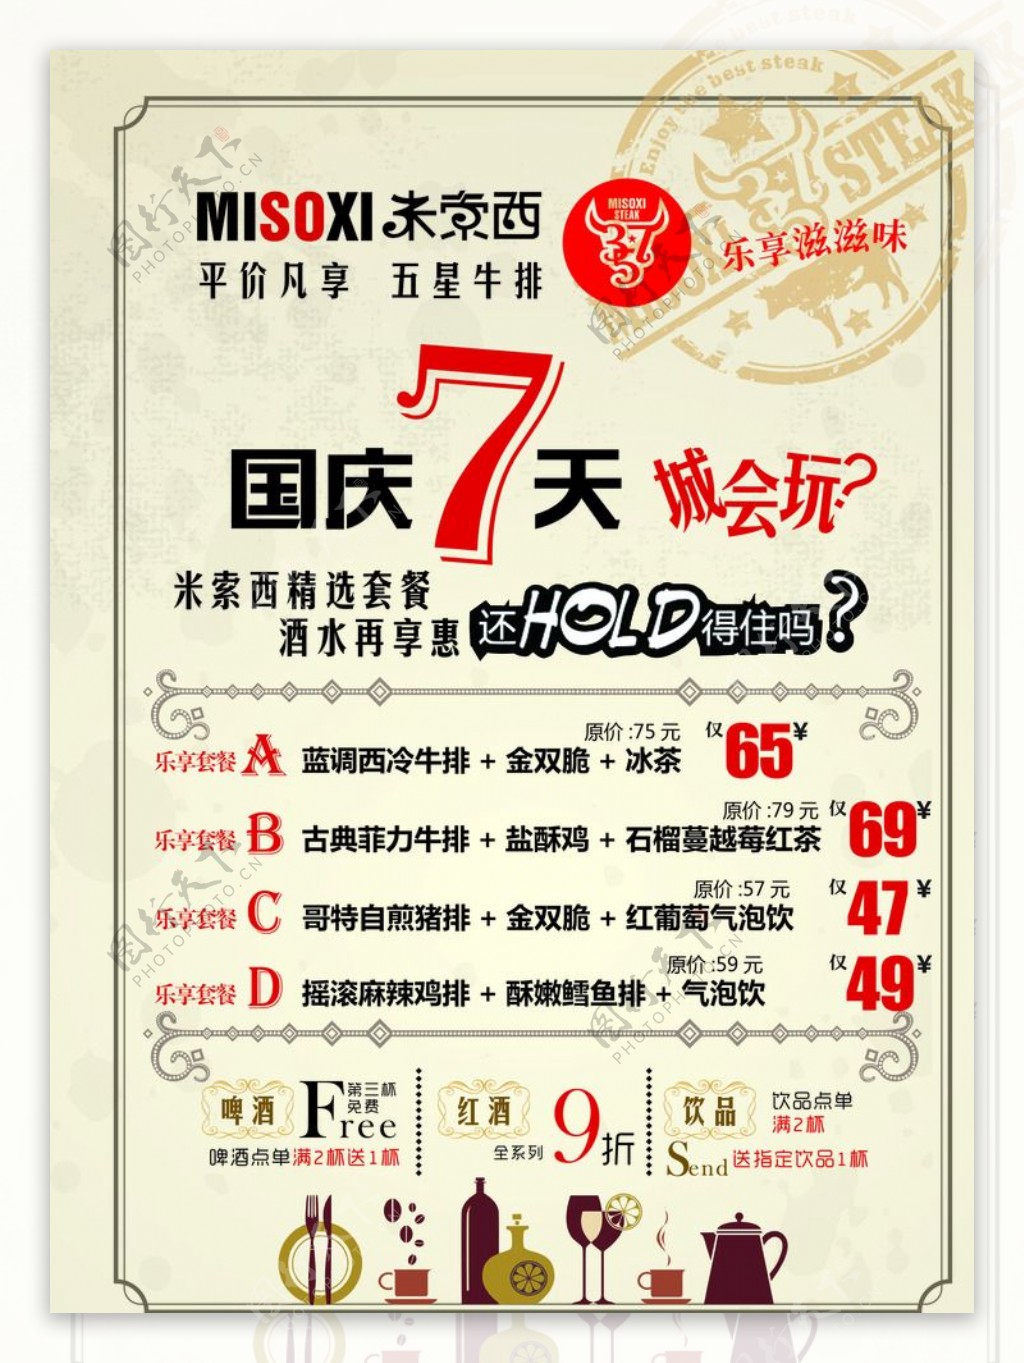 米索西西餐厅国庆节宣传彩页